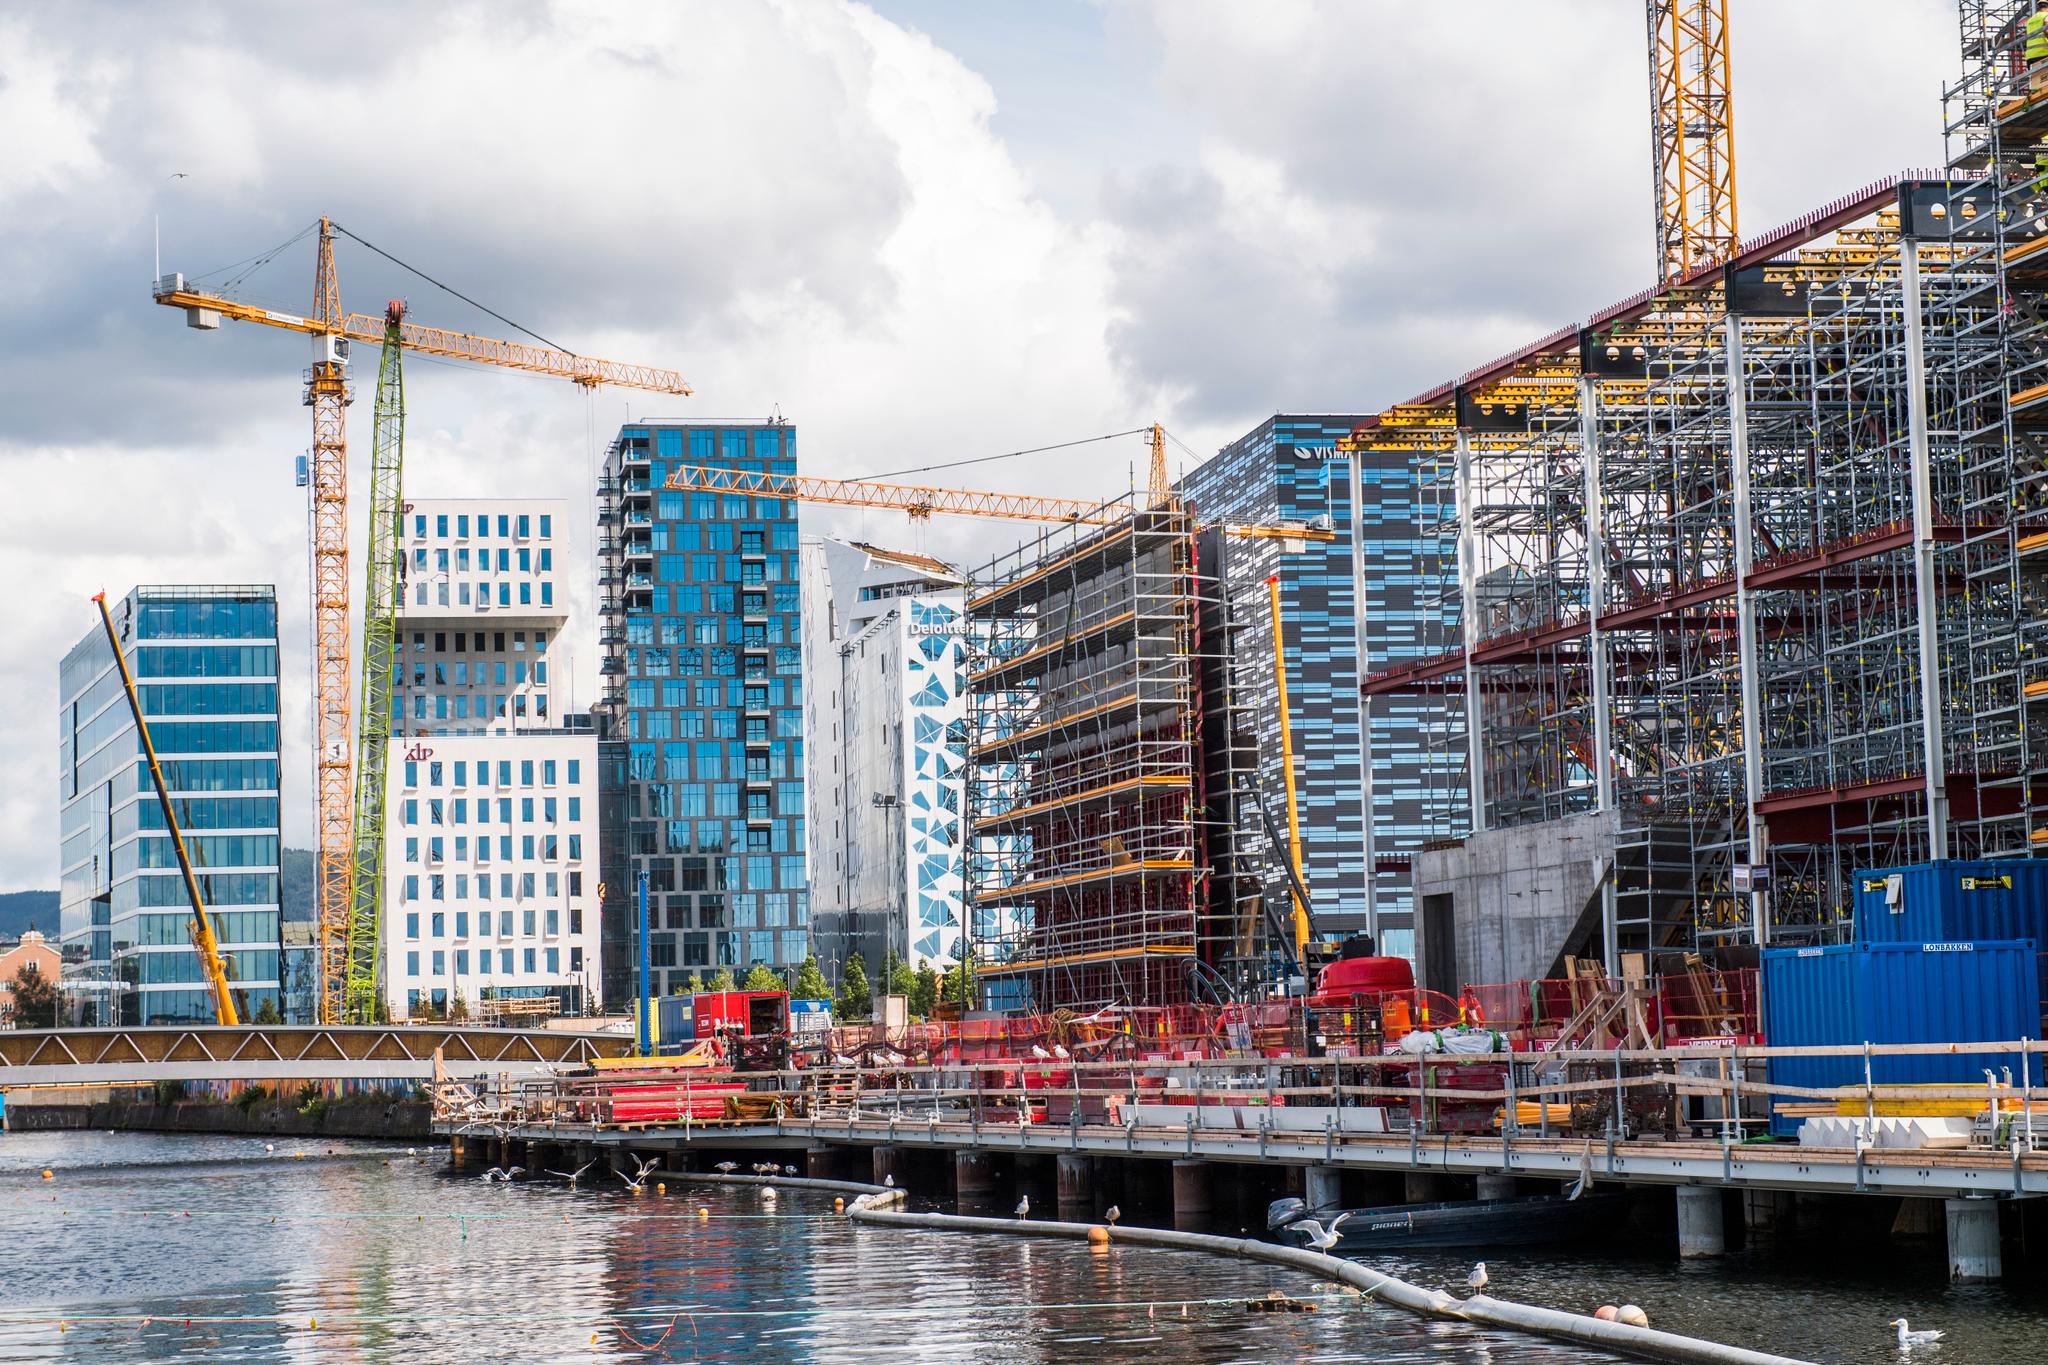 Det er blitt bygget mange flere boliger i Oslo i det siste. Samtidig har befolkningsveksten i hovedstaden avtatt, noe som har bidratt til at boligprisene har falt. Det samme har Regjeringens boliglånsinnstramninger gjort.